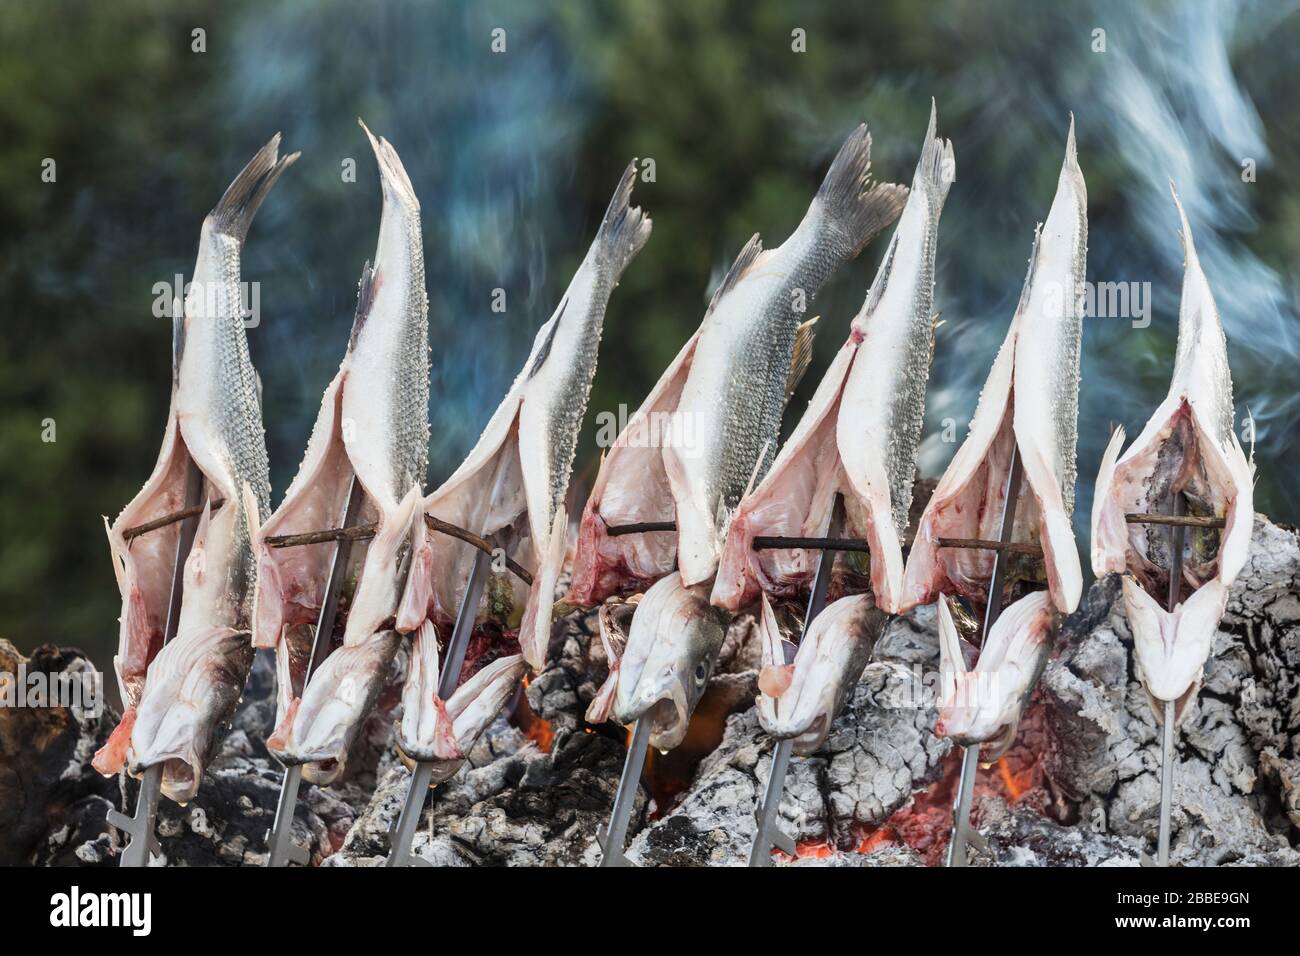 La Cala de Mijas, Costa del Sol, Provinz Málaga, Andalusien, Südspanien. Fisch, der über offenem Feuer außerhalb des Strandrestaurants, das als ch bekannt ist, braten kann Stockfoto